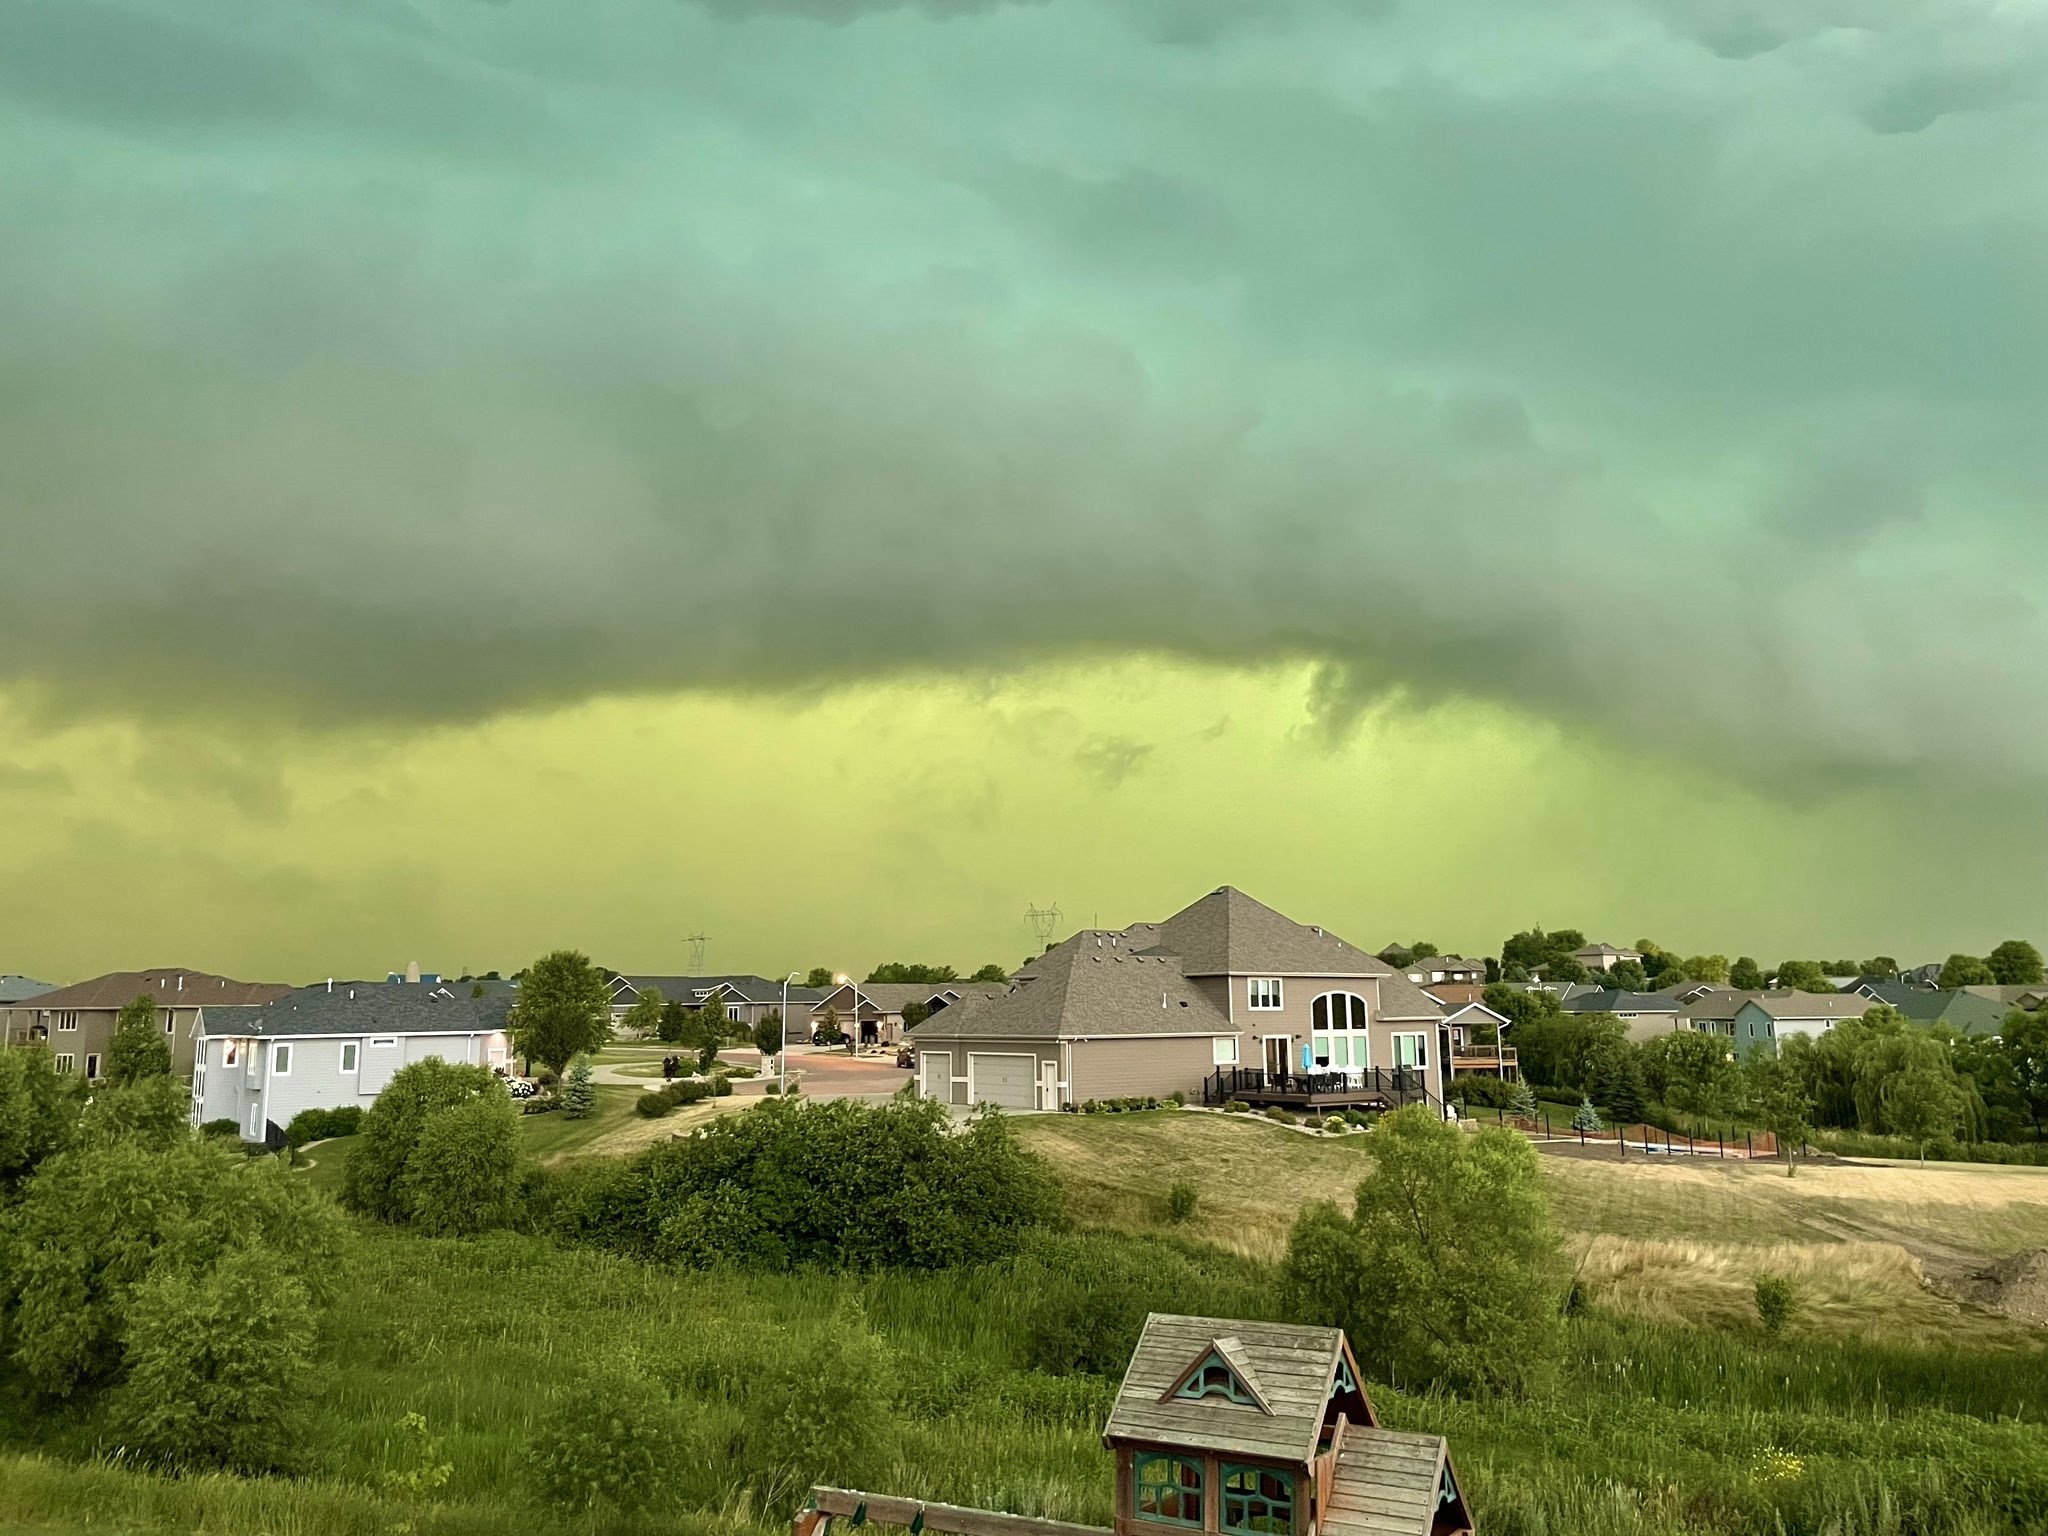 Fotos do céu verde em em Sioux Falls, na Dakota do Sul (EUA) (Foto: Reprodução/@cory_martin/Twitter)